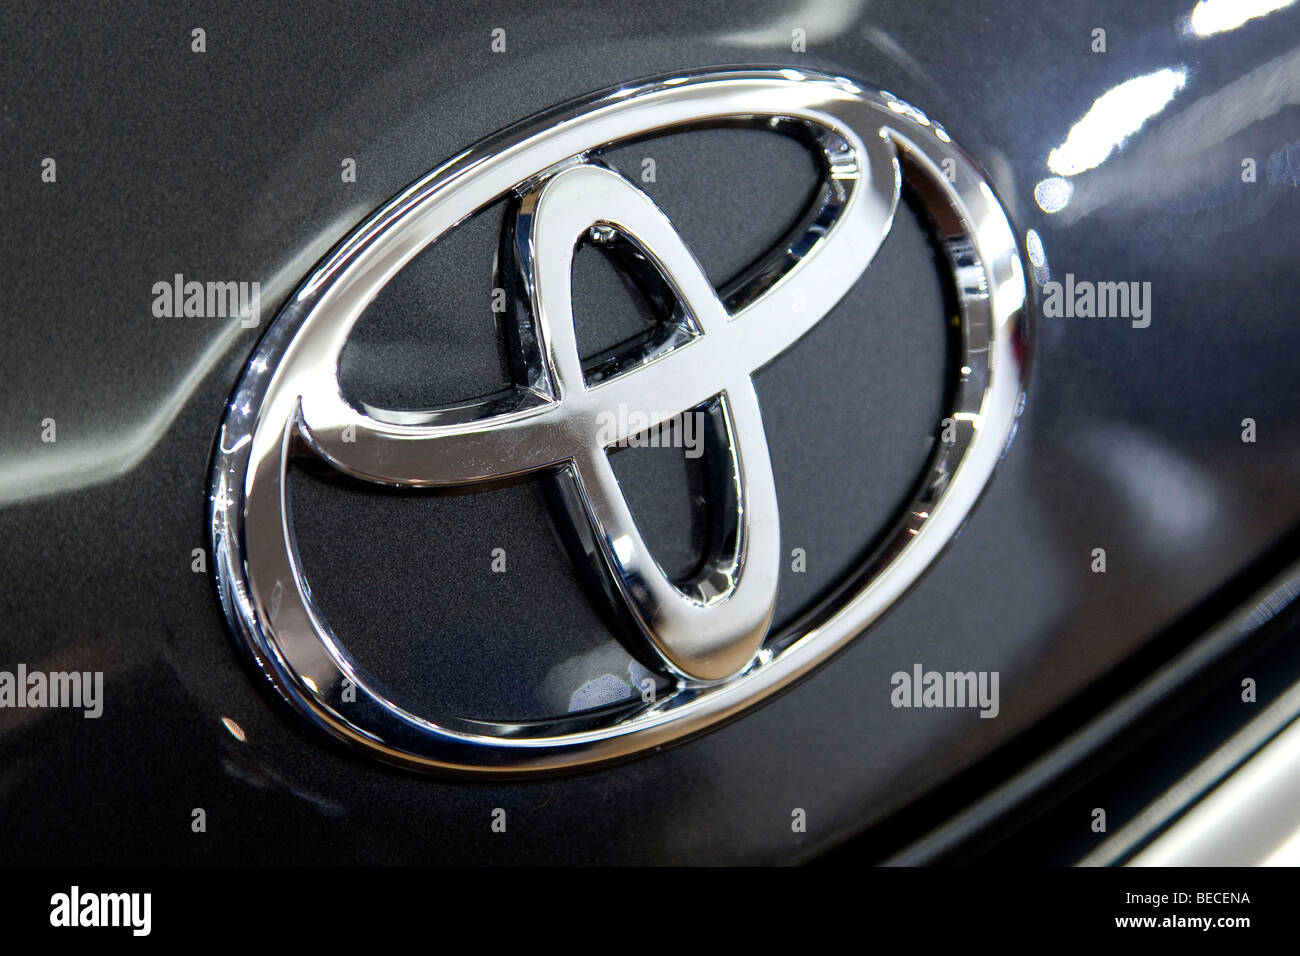 Emblema Toyota en un coche Foto de stock